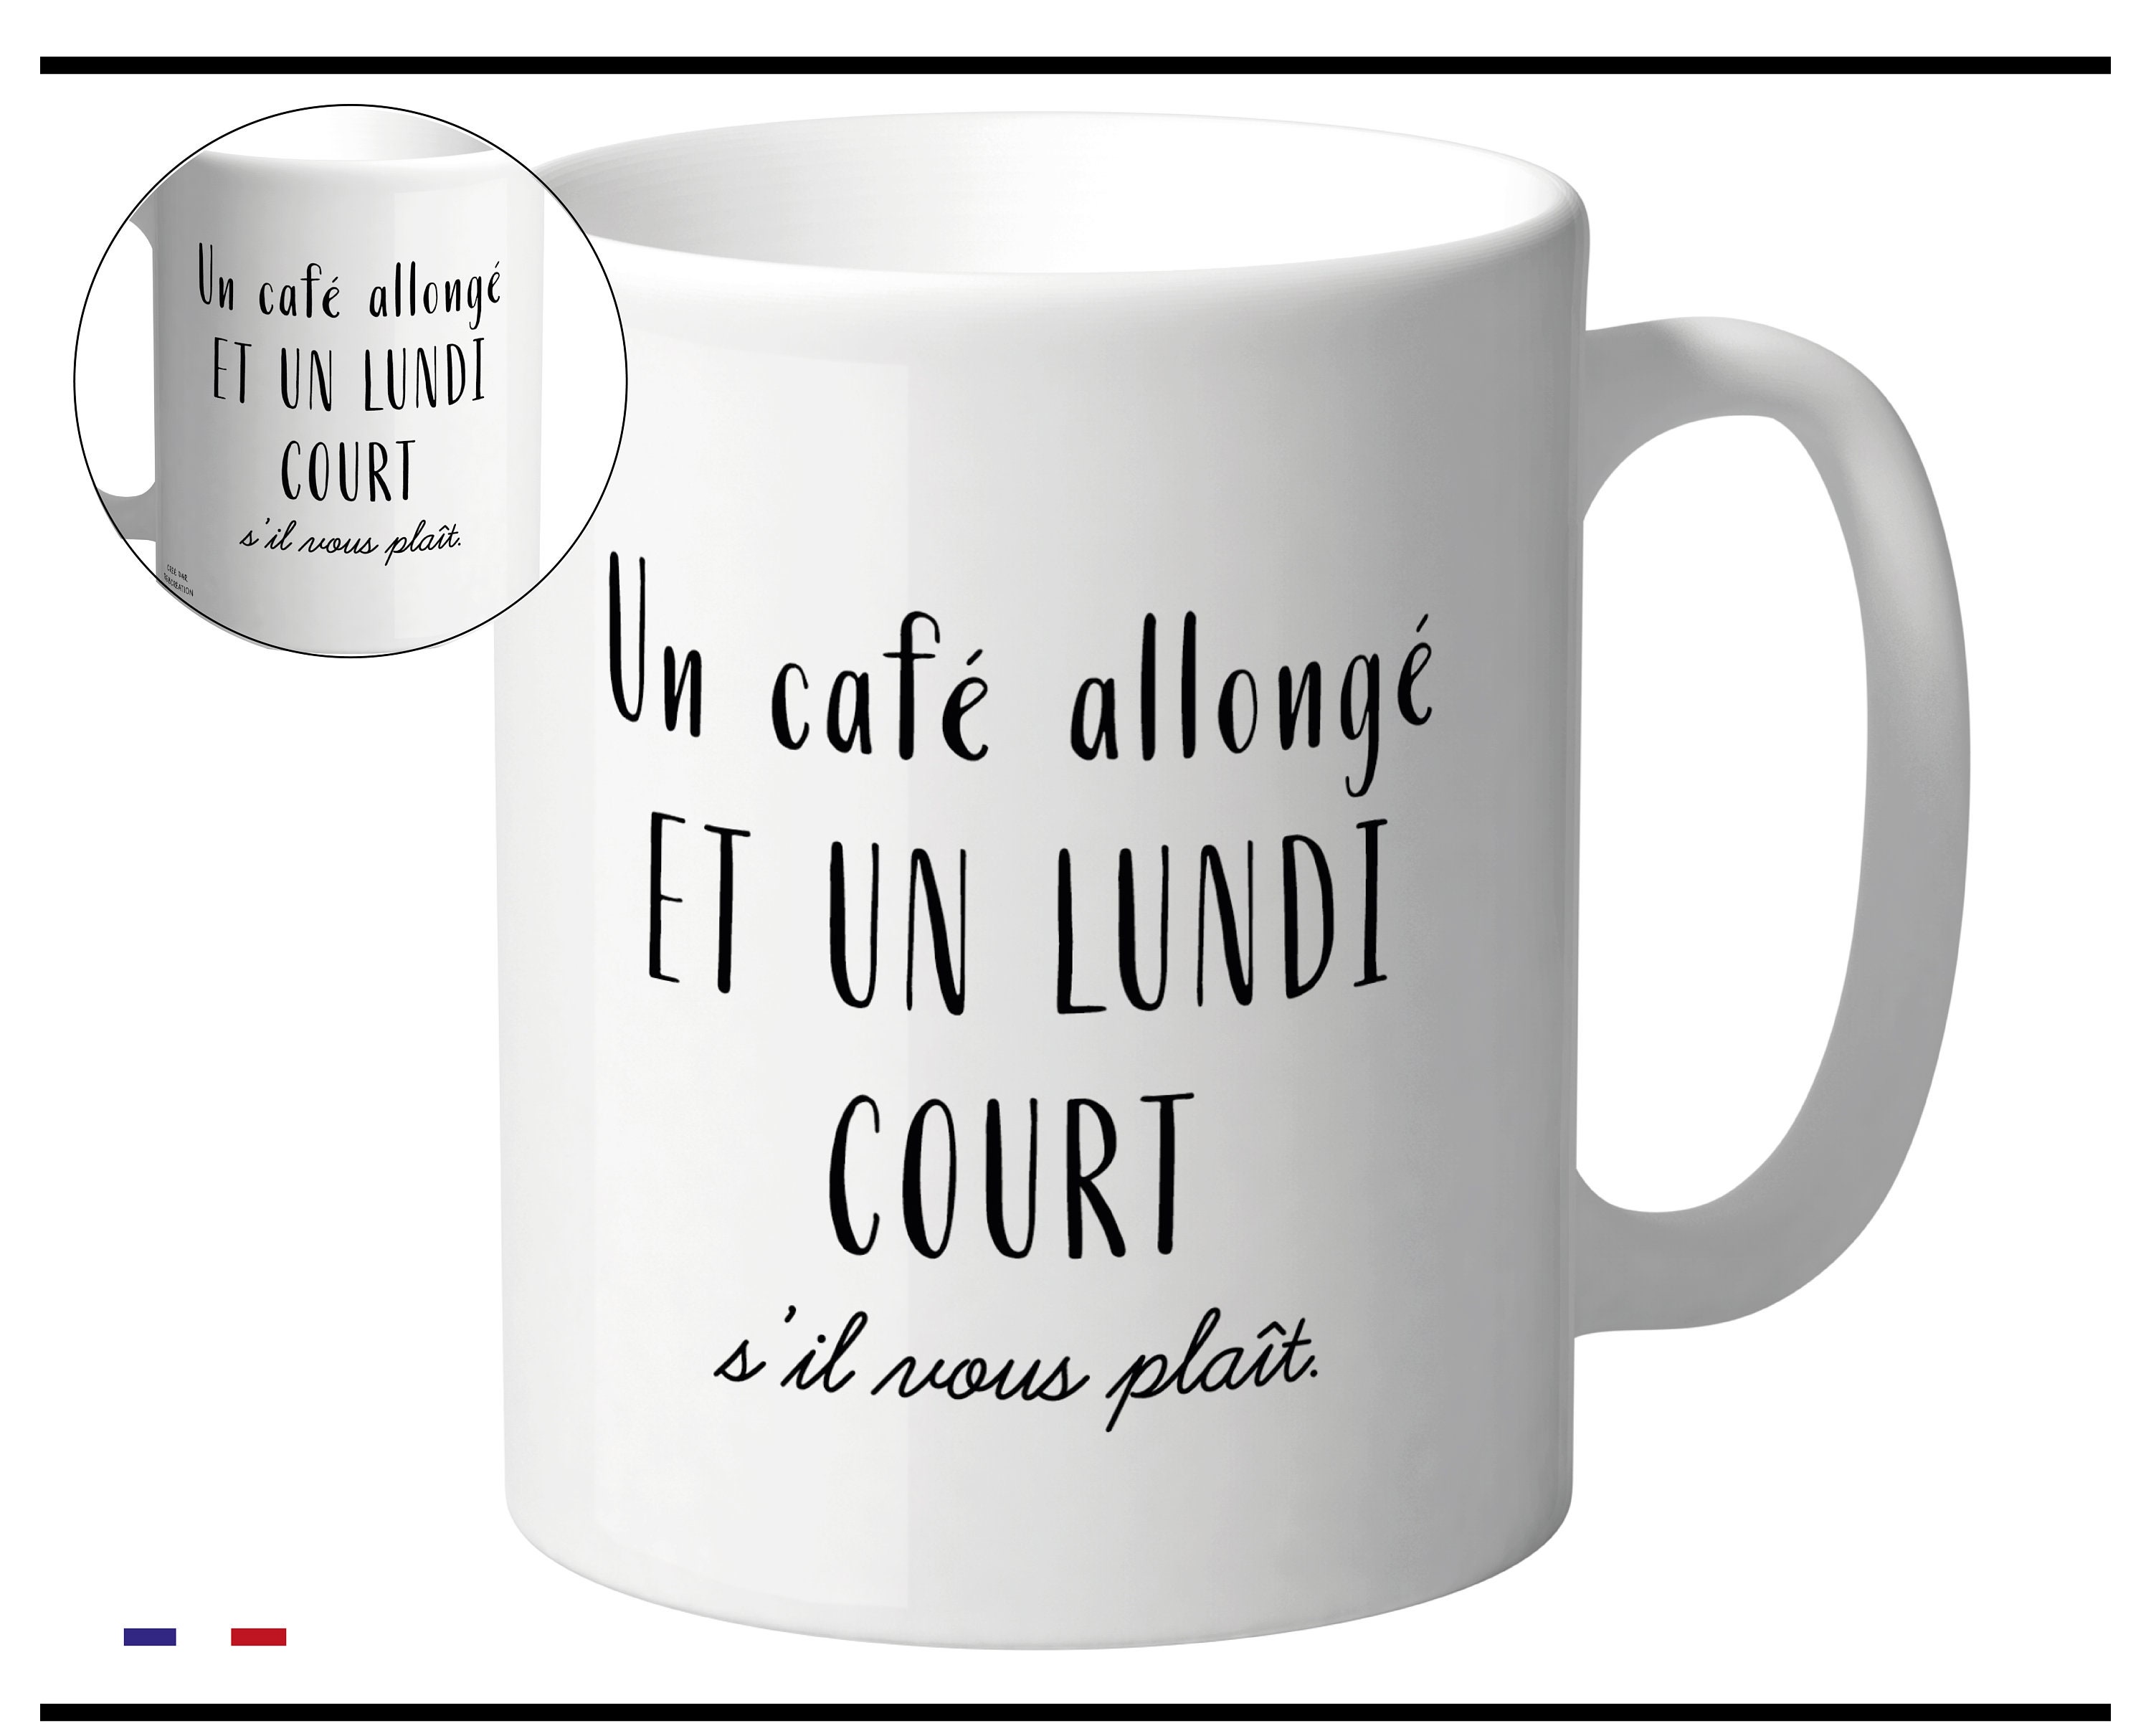 Mug Humour Tasse à Café - On Dirait pas mais j'suis à Fond ! - Tasse et  Mugs - Achat & prix